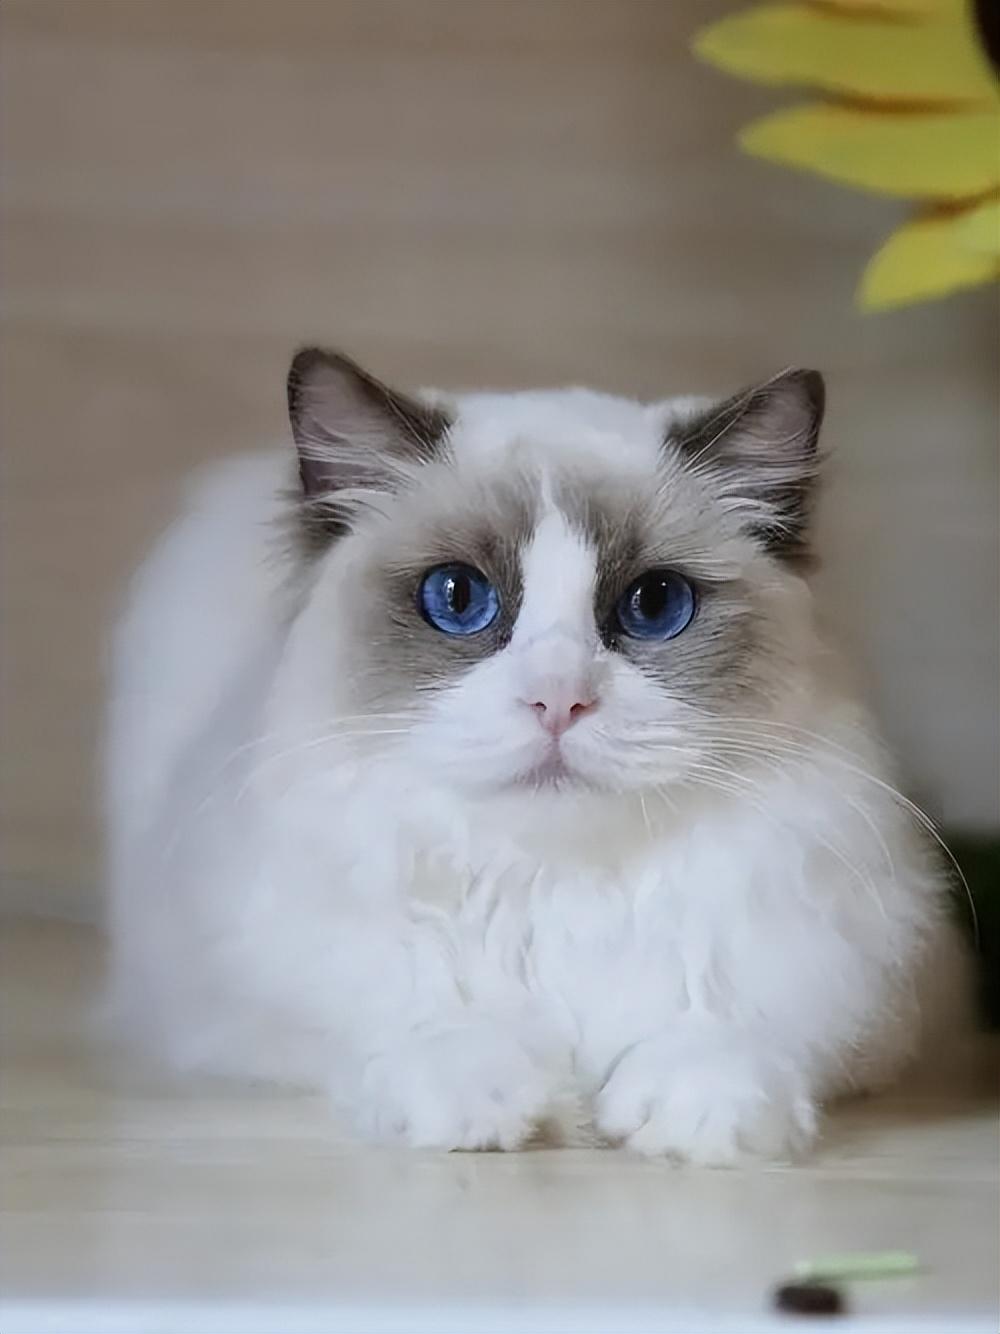 蓝双布偶猫图片大全,蓝双布偶猫高清壁纸 